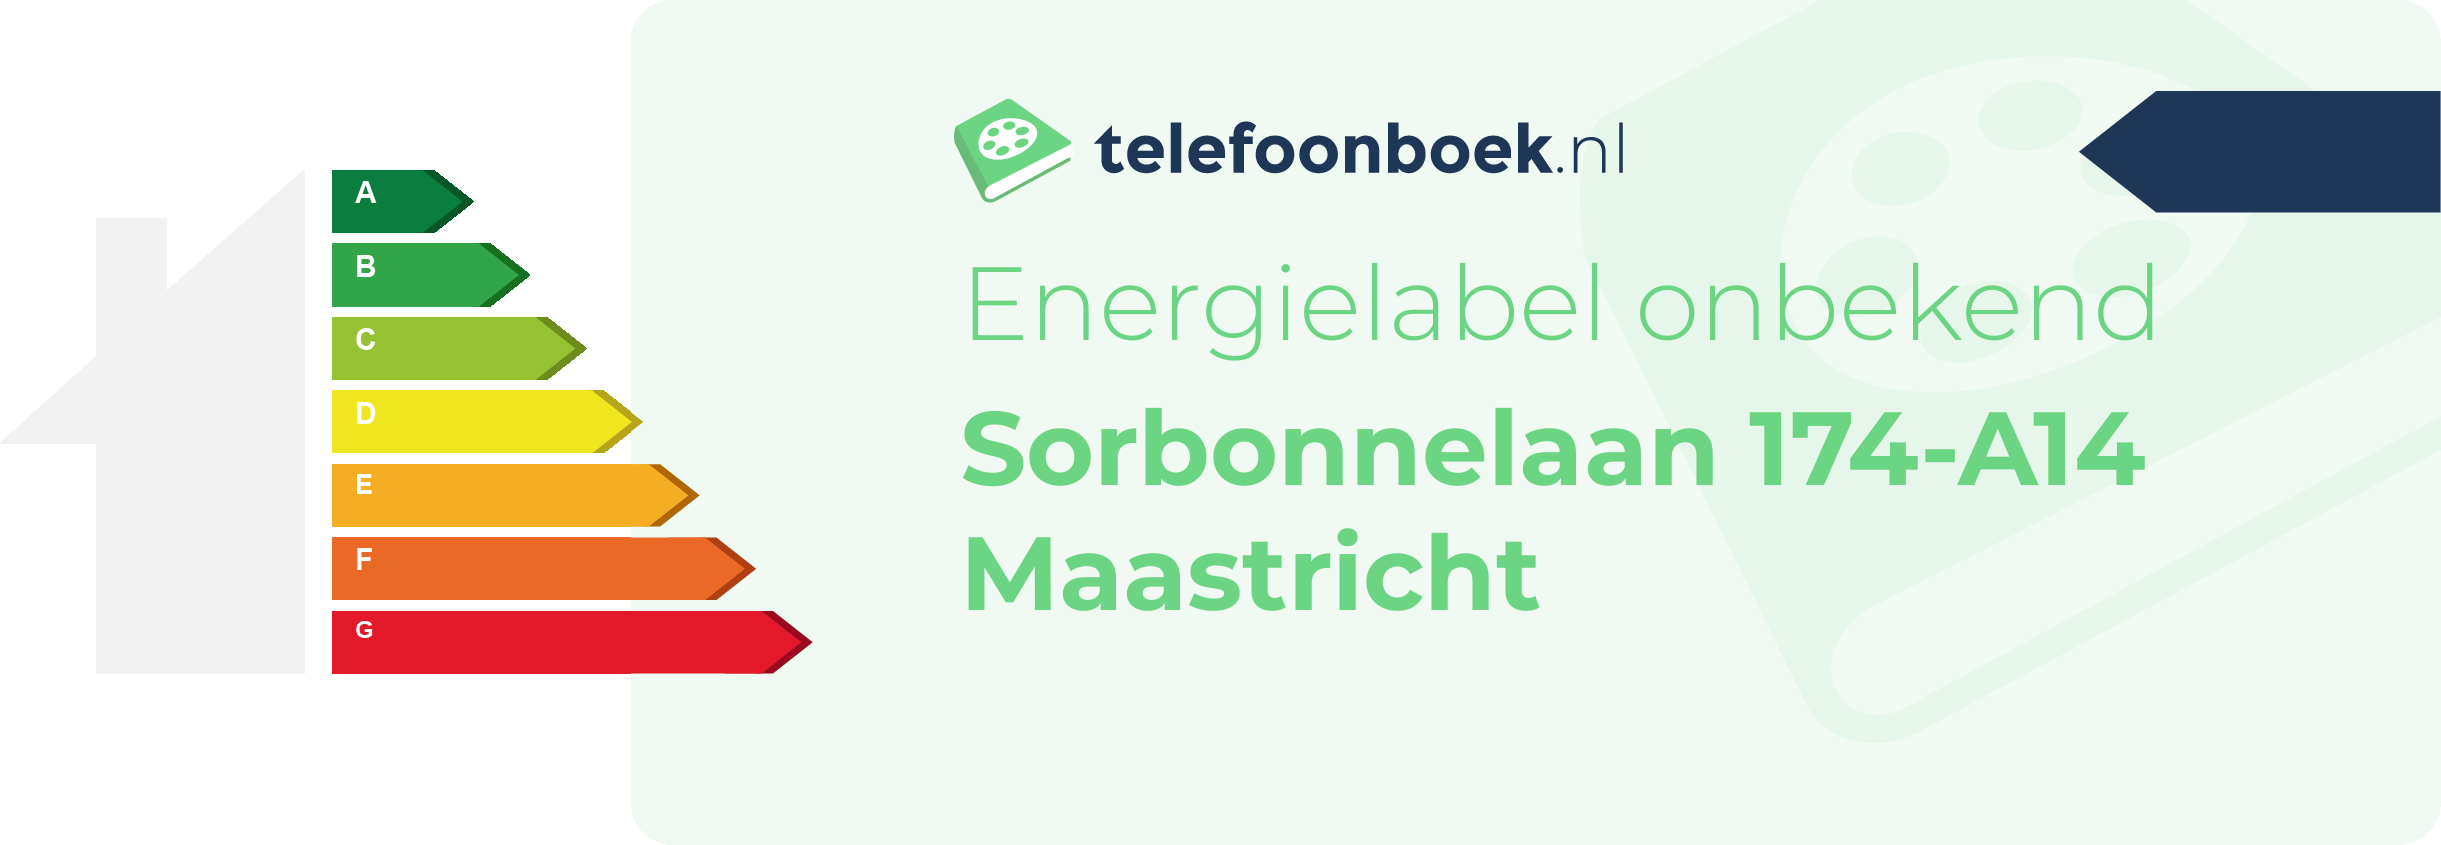 Energielabel Sorbonnelaan 174-A14 Maastricht